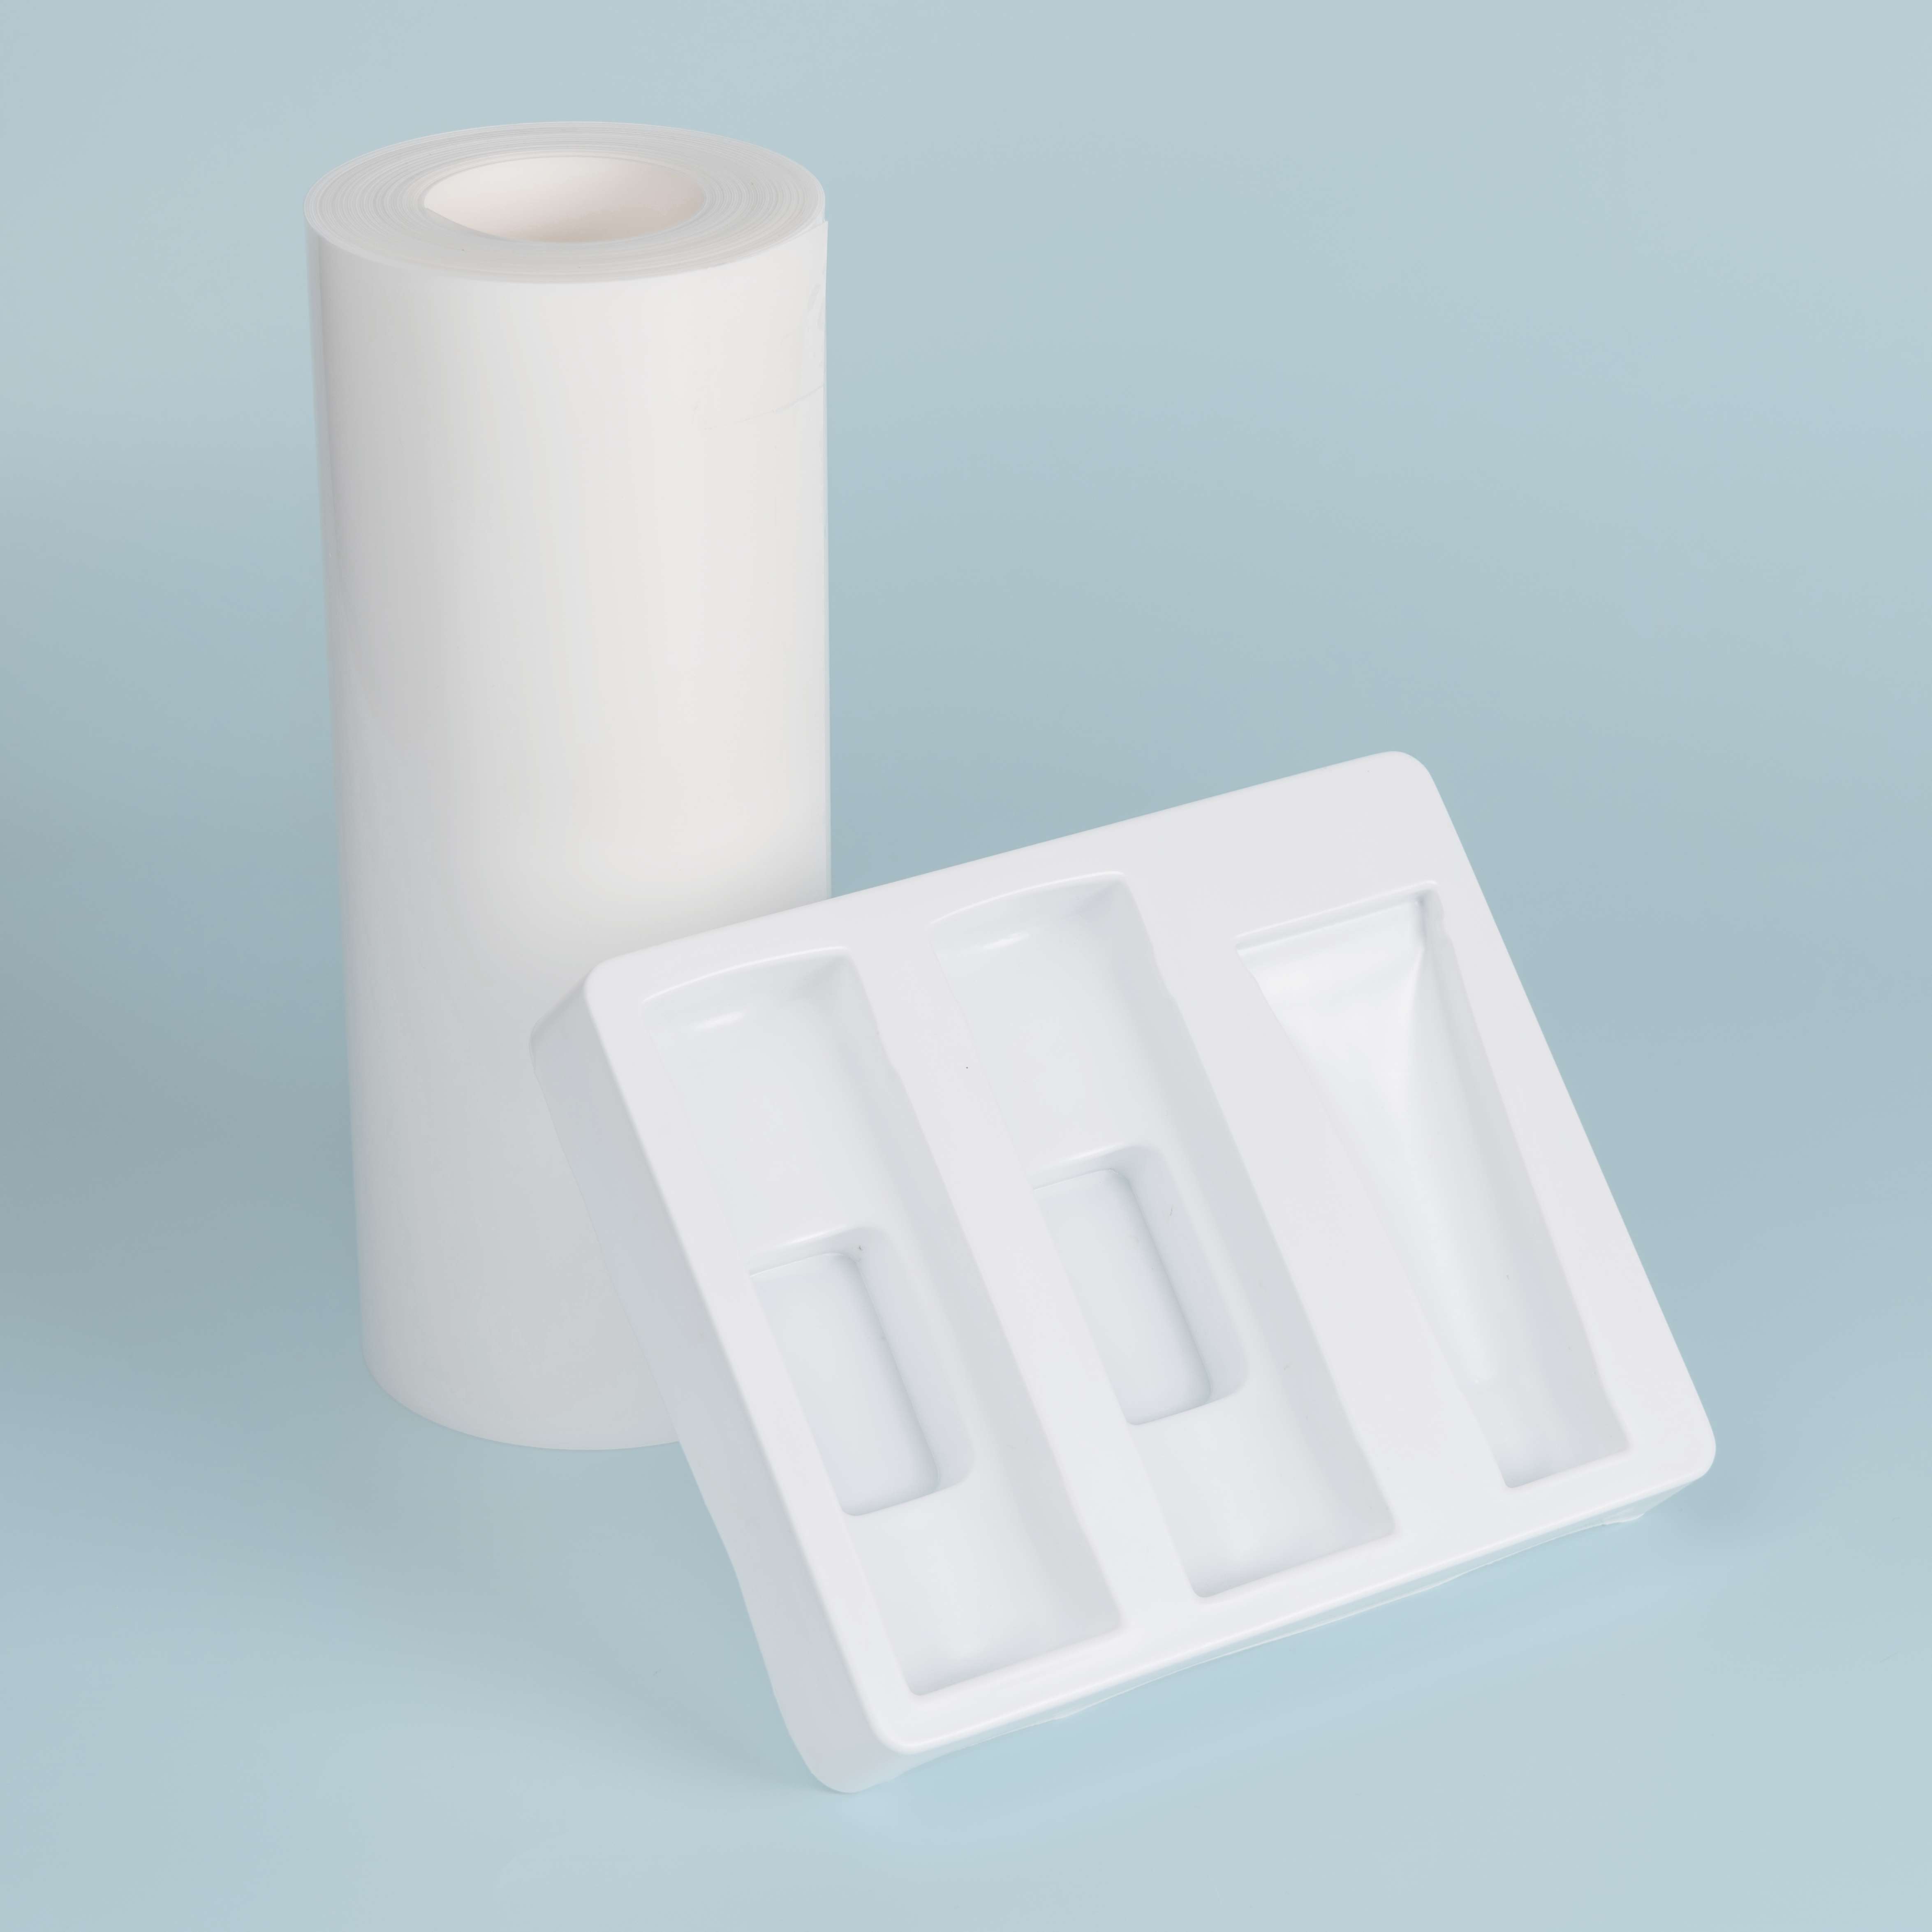  Rouleau de feuilles de plastique HIPS antistatique blanc pour emballages électroniques-2